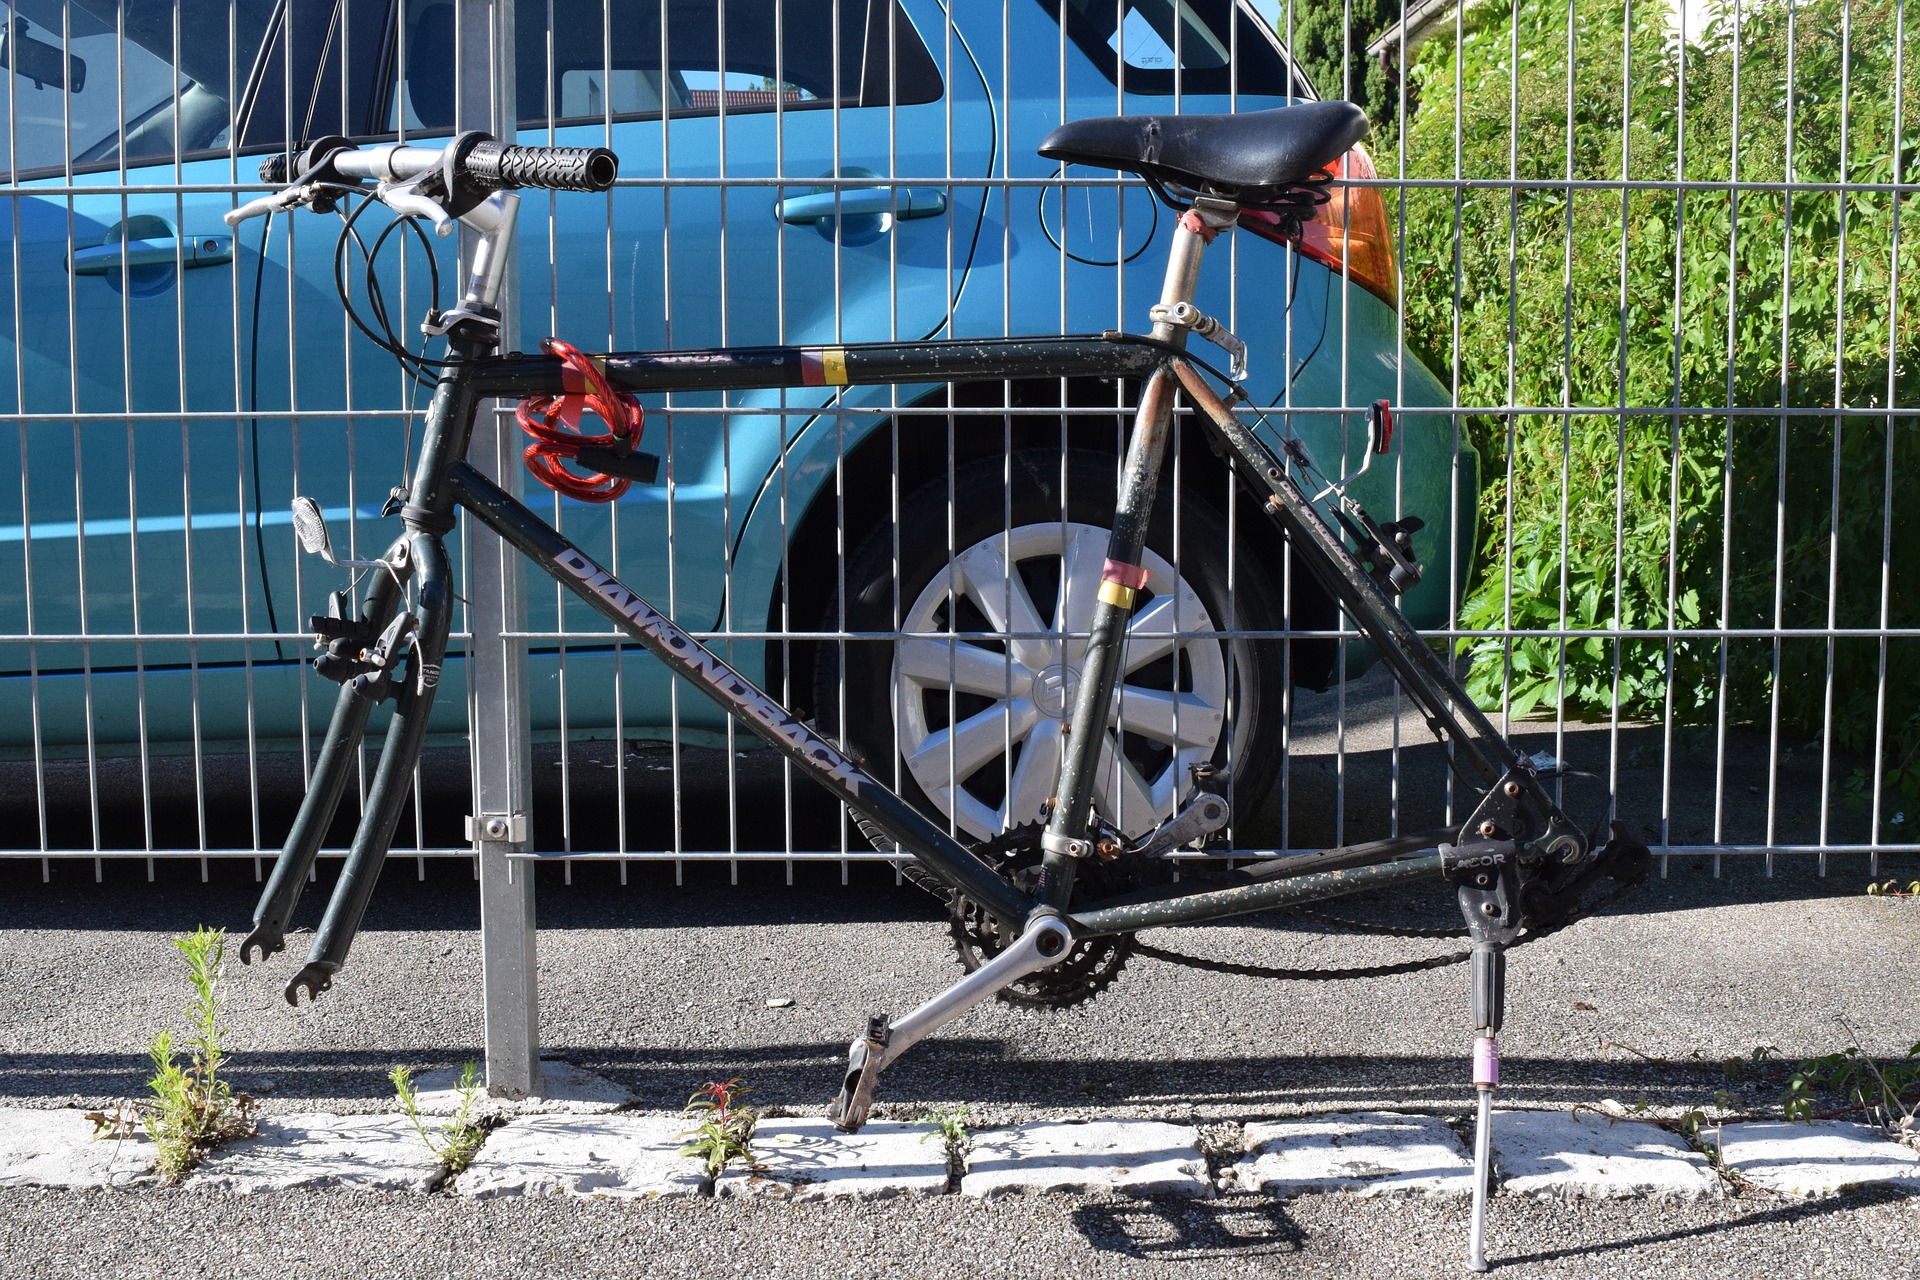 Vols de vélos à Lille : la menace qui monte